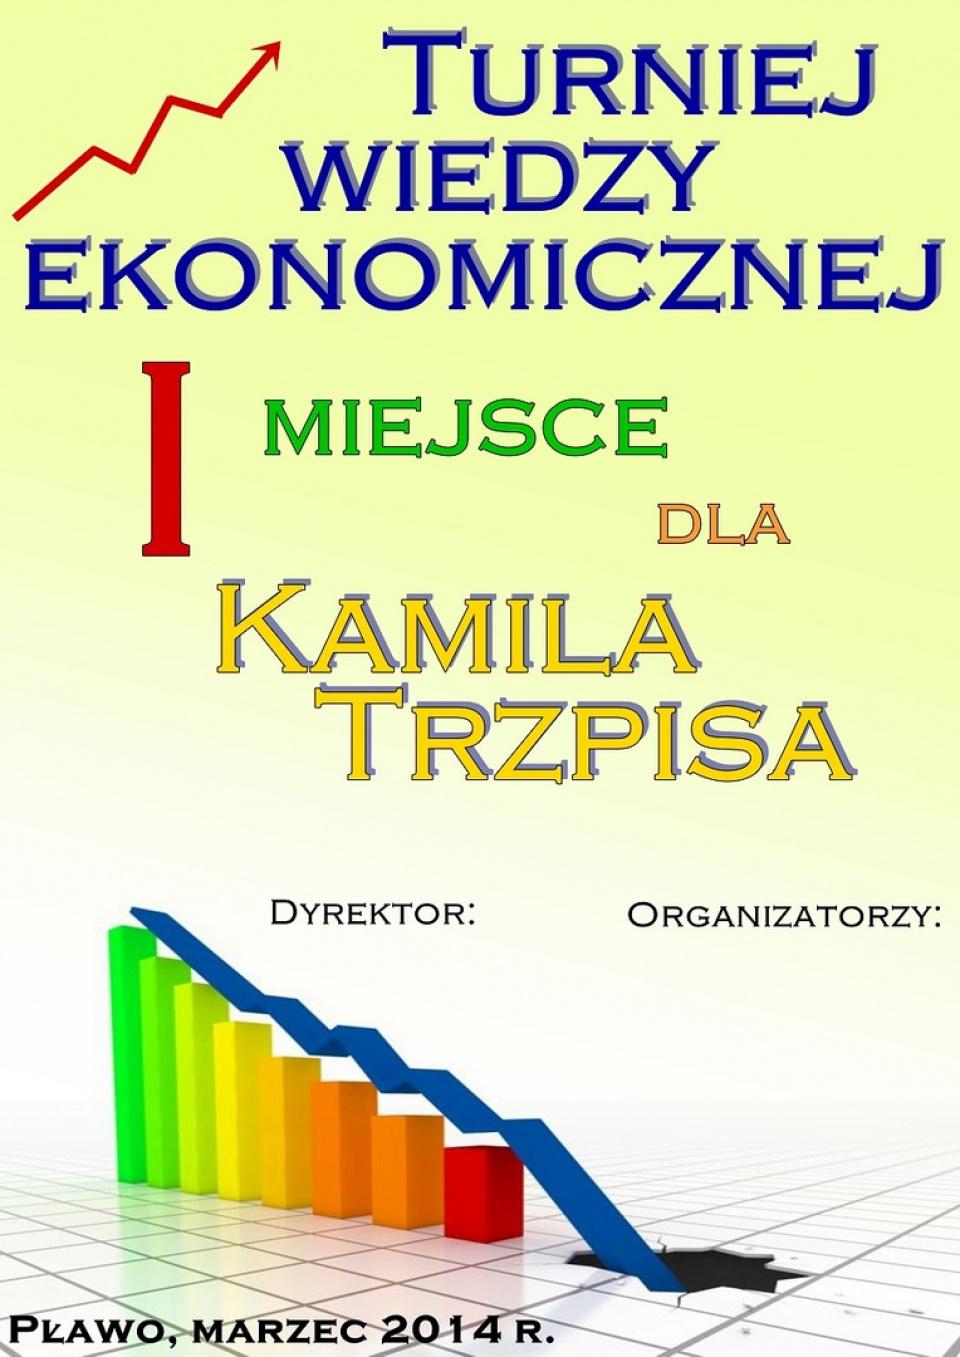 Turniej Wiedzy Ekonomicznej